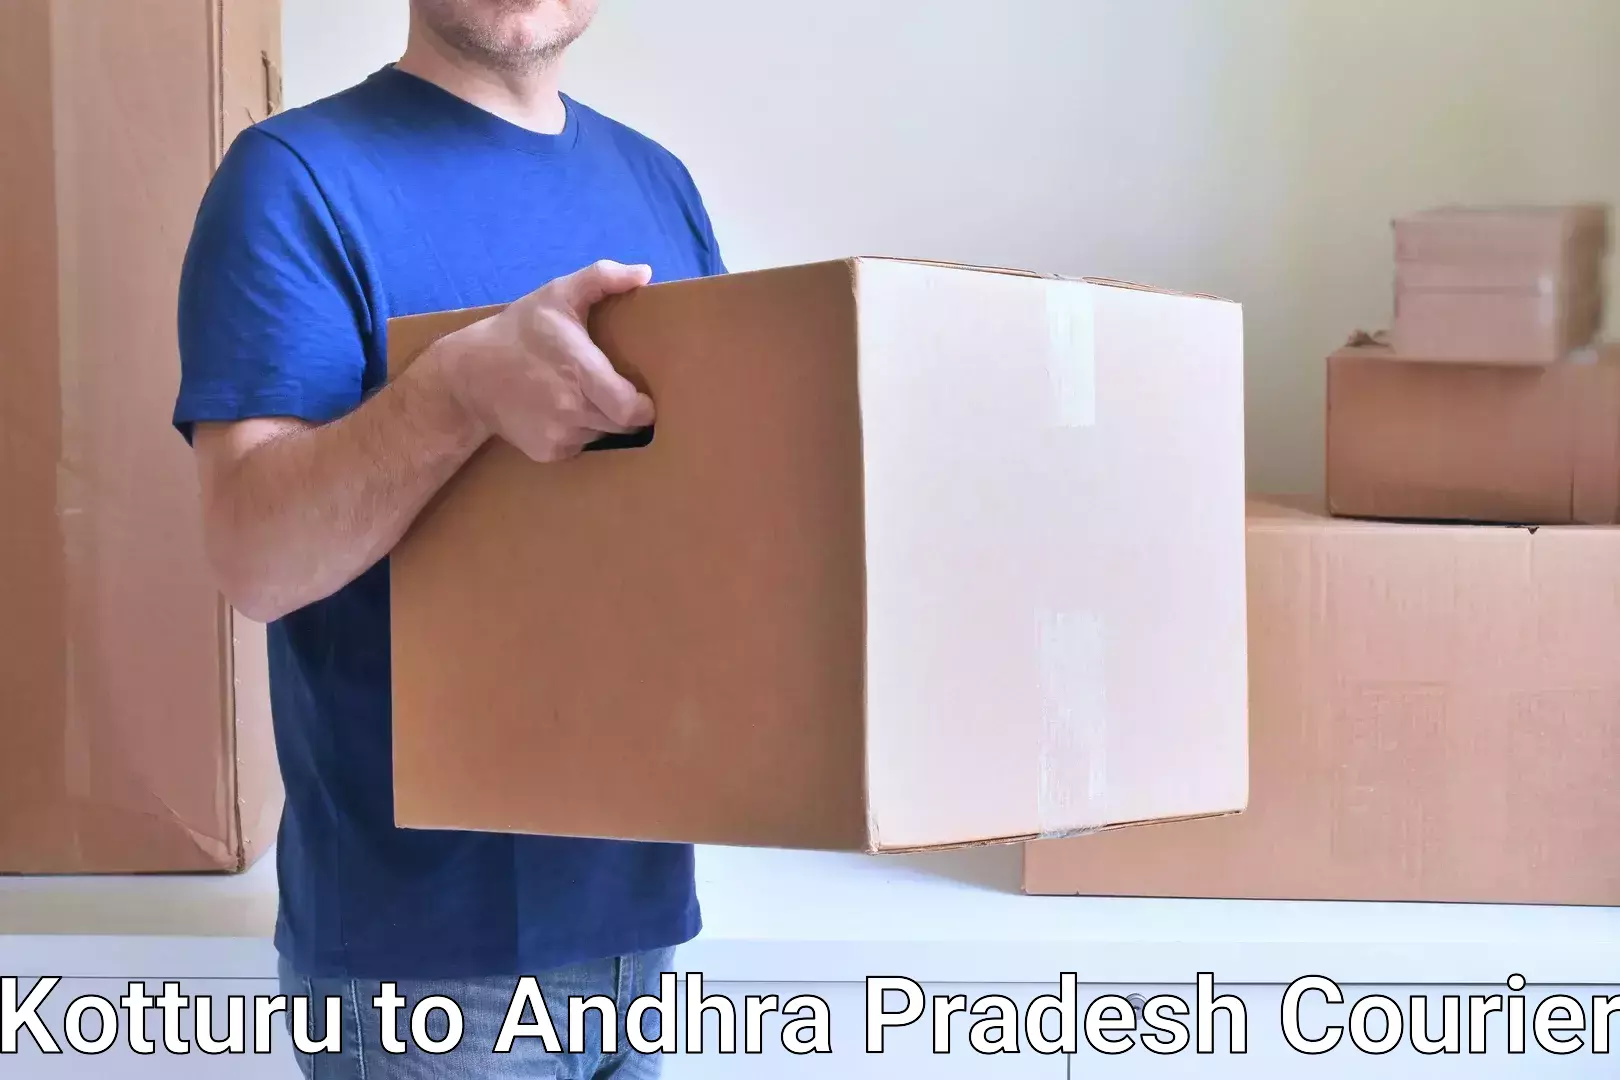 Custom courier packaging Kotturu to Andhra Pradesh